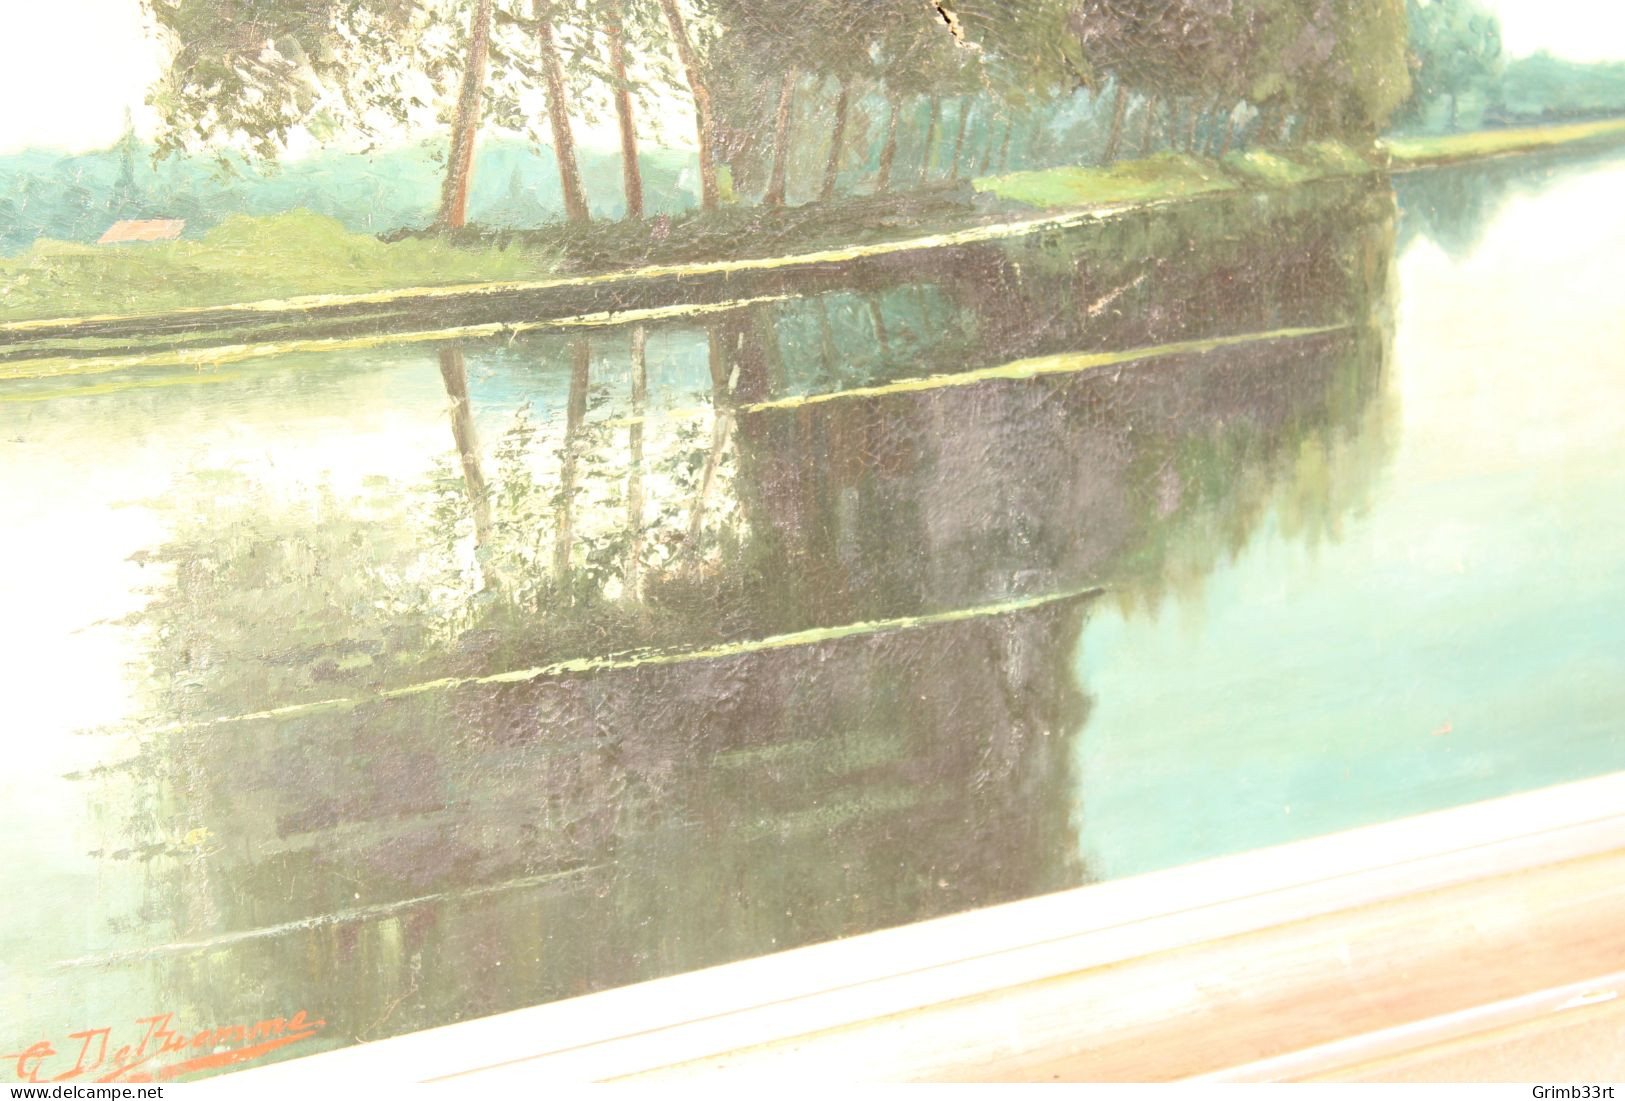 Gaston DE BIEMME (XIX-XX) - Au bord du canal - Olie op doek - 104 x 143 cm